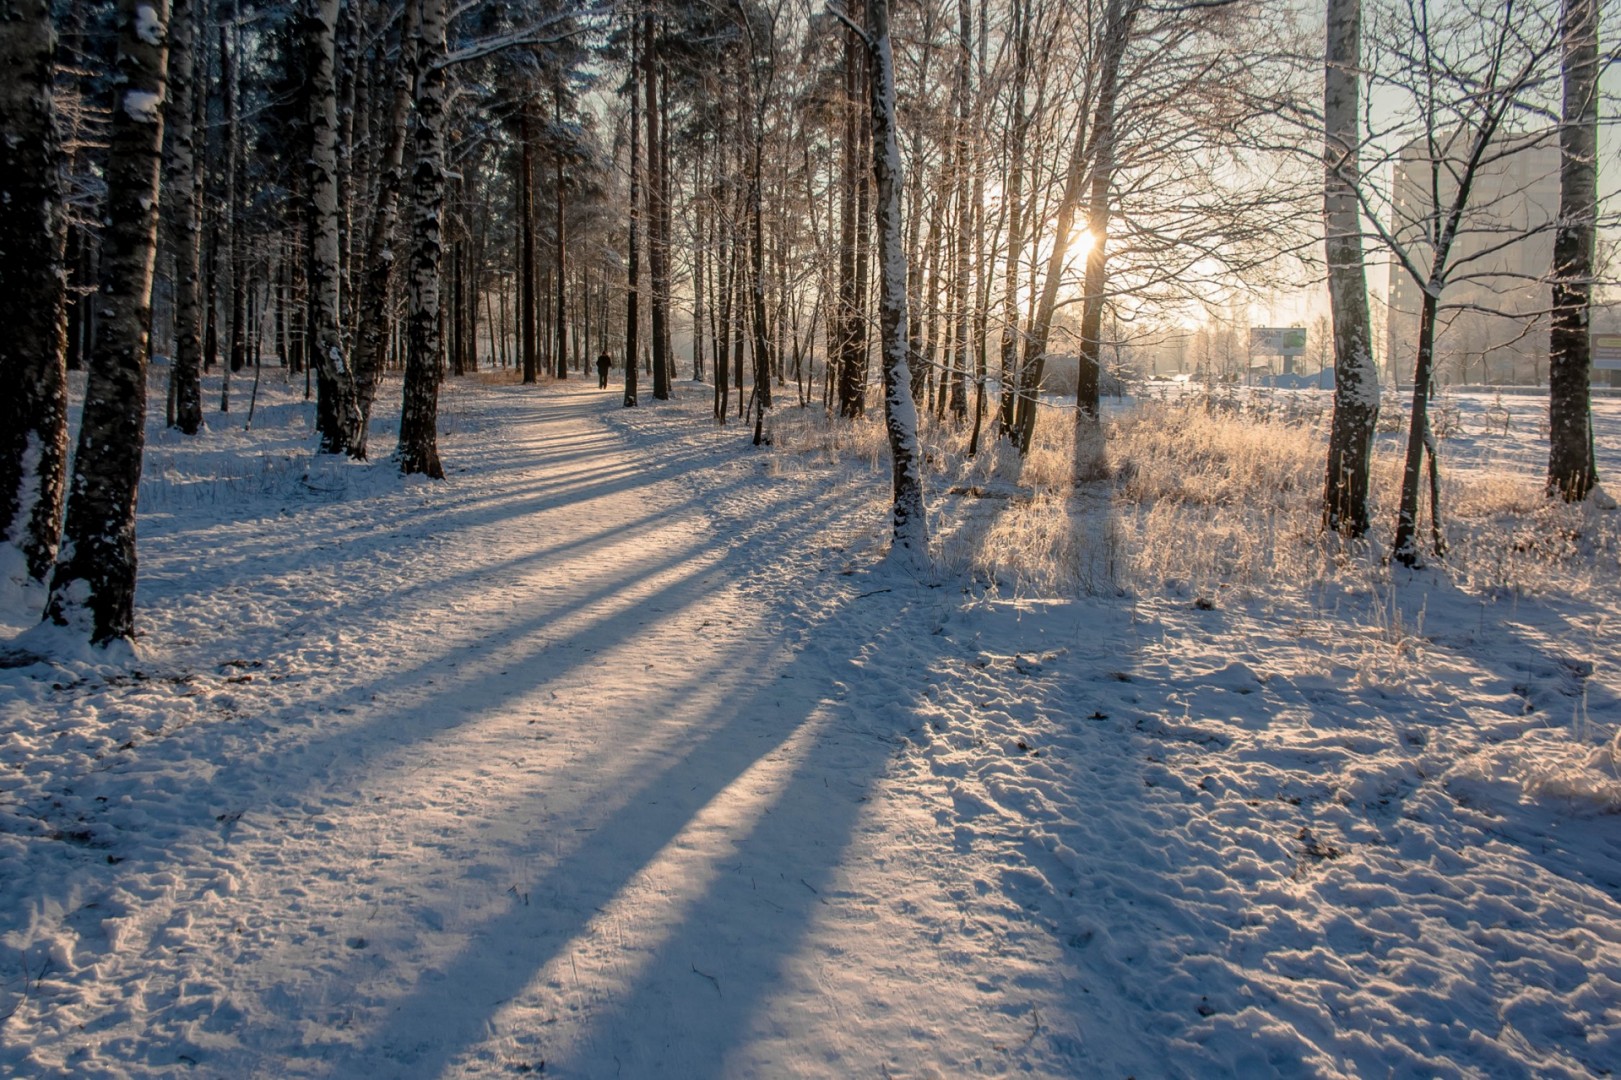 Прогулка в зимнем лесу фоторассказ